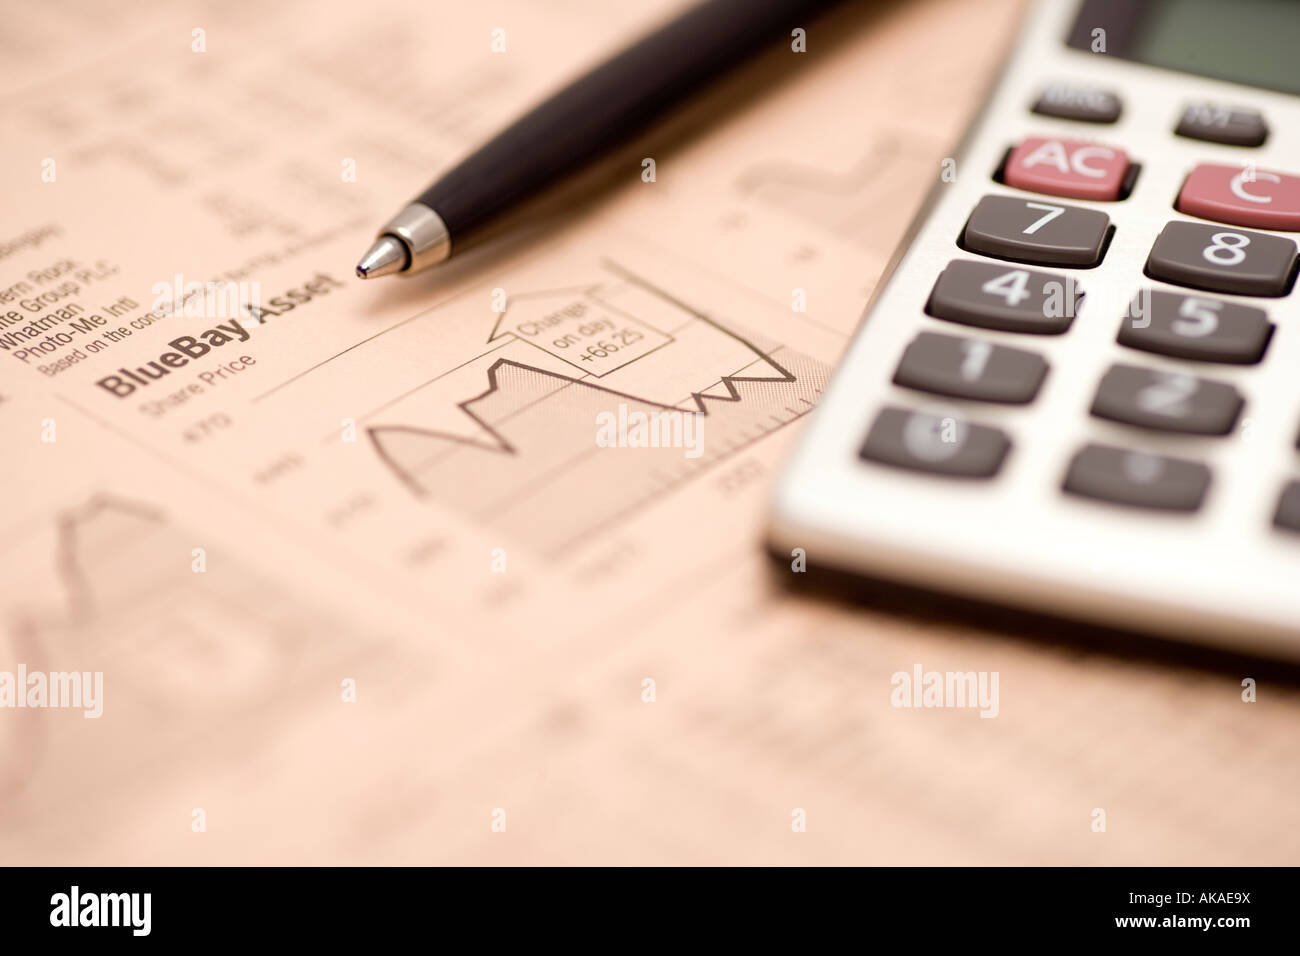 Des affaires journal pages financières des actions d'étudier les marchés financiers avec un crayon et une calculatrice Banque D'Images